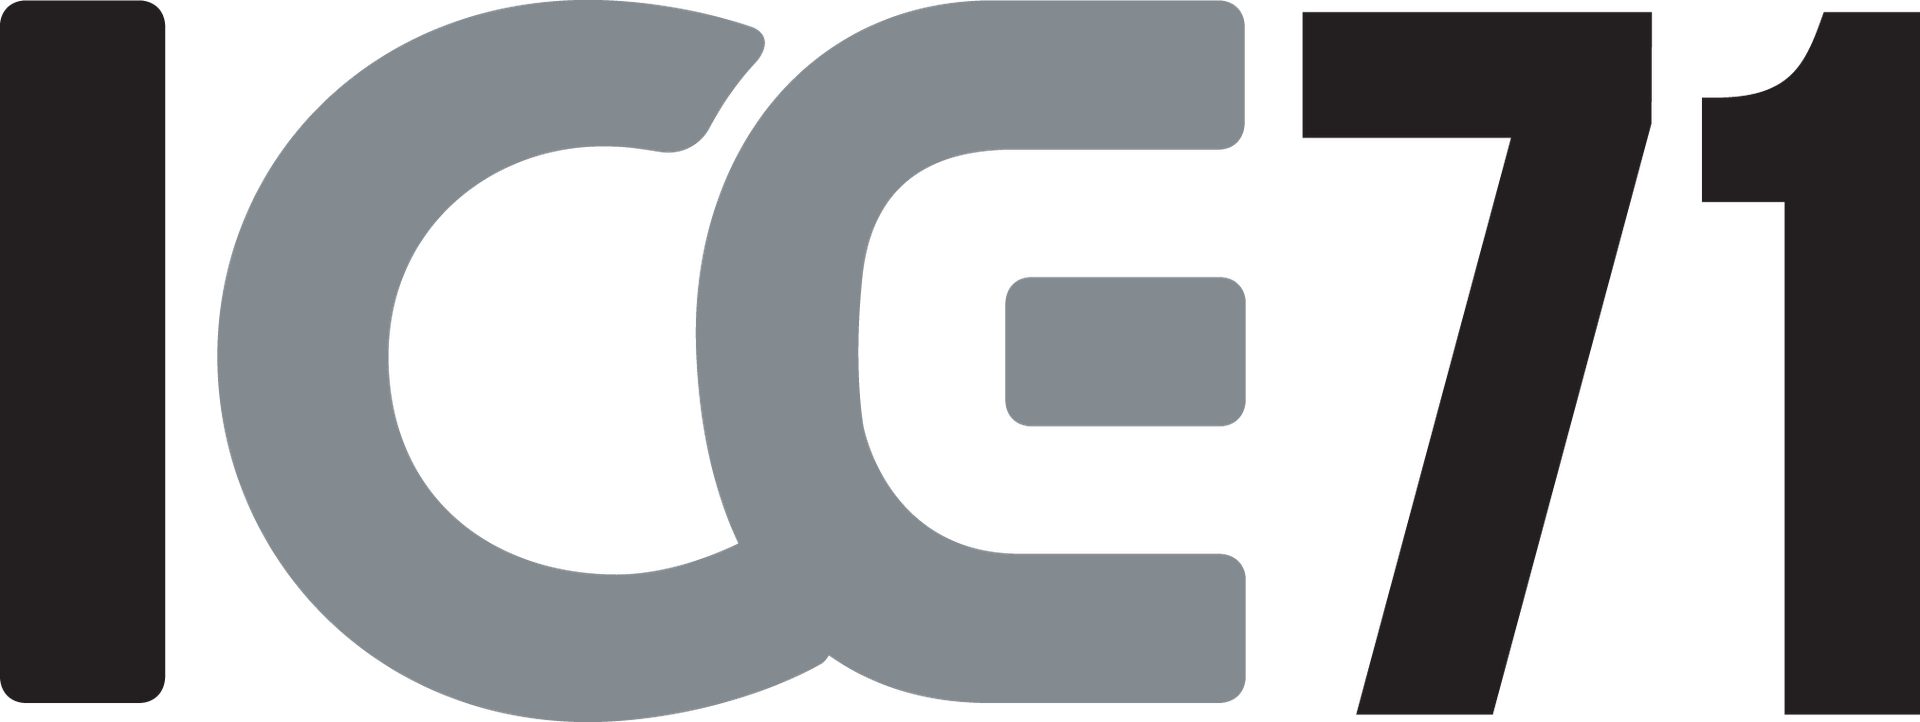 ICE71 logo